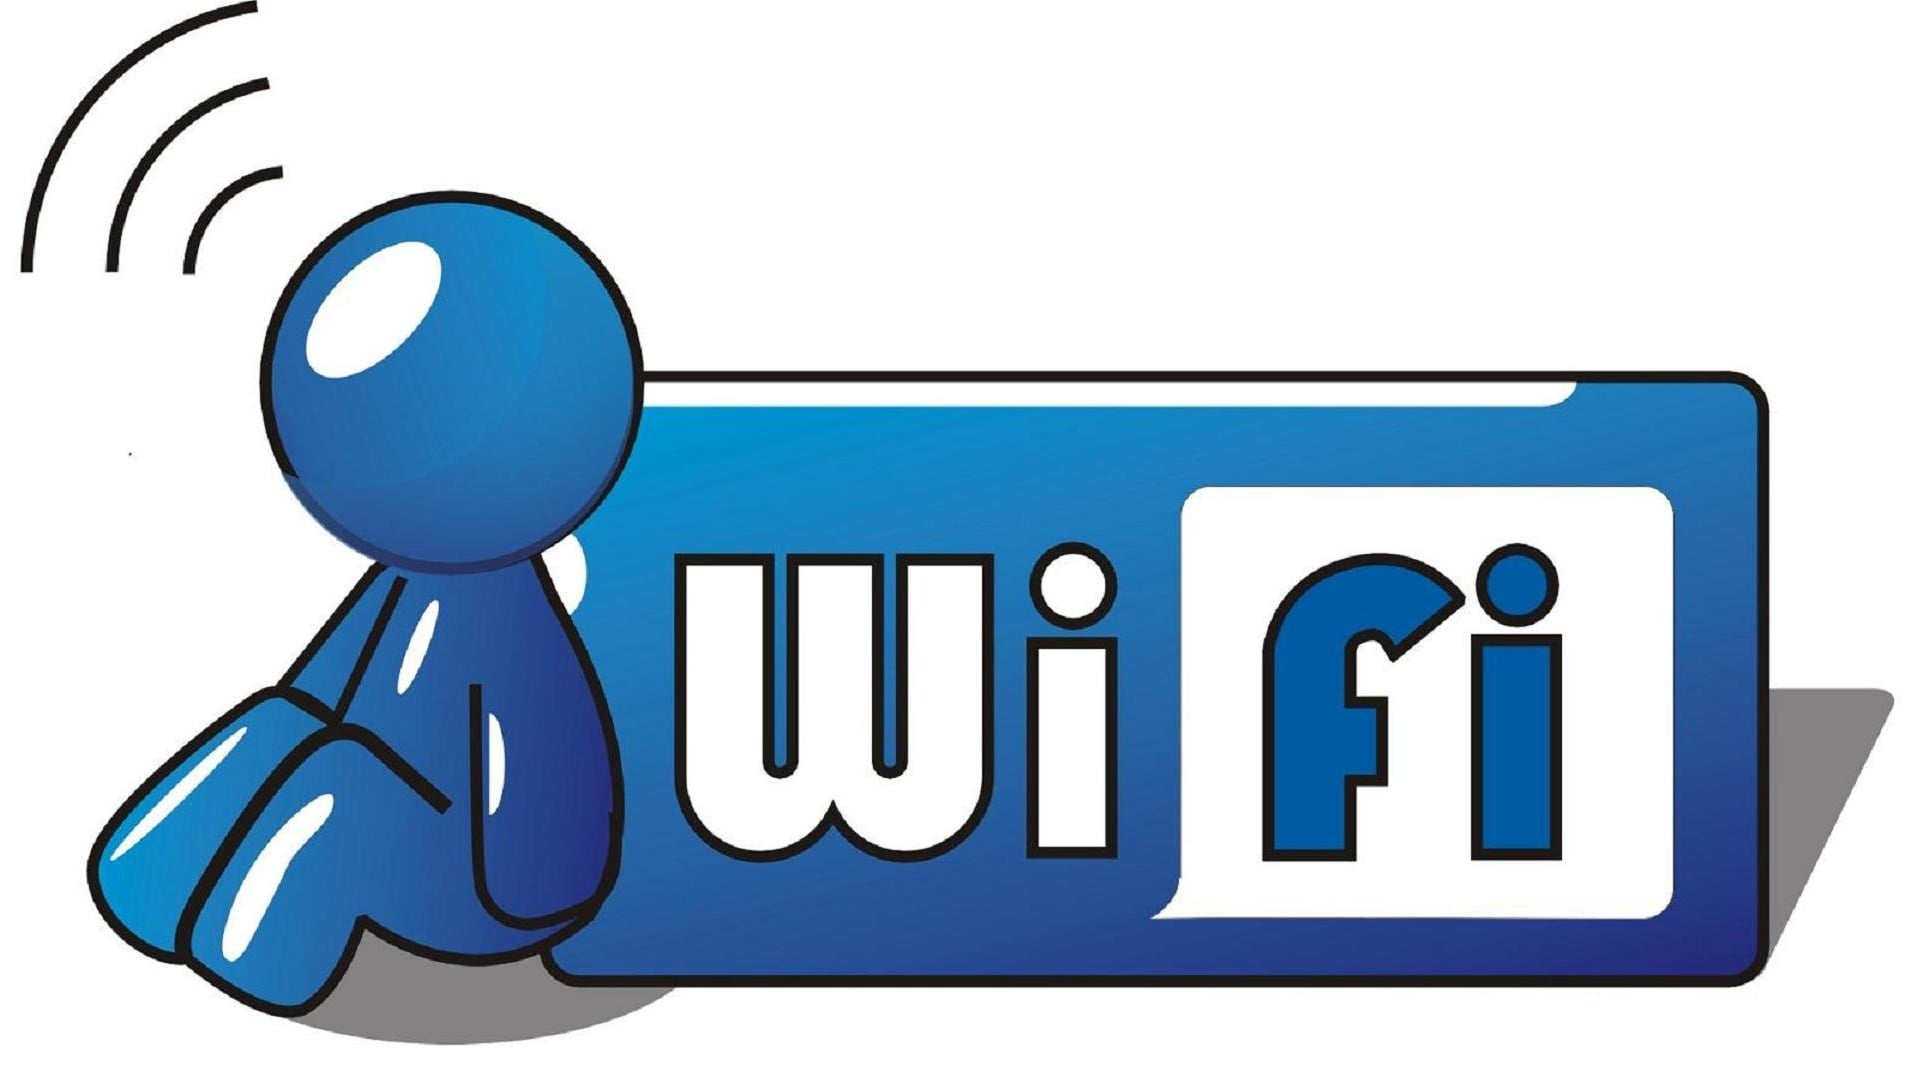 increase wifi network range,